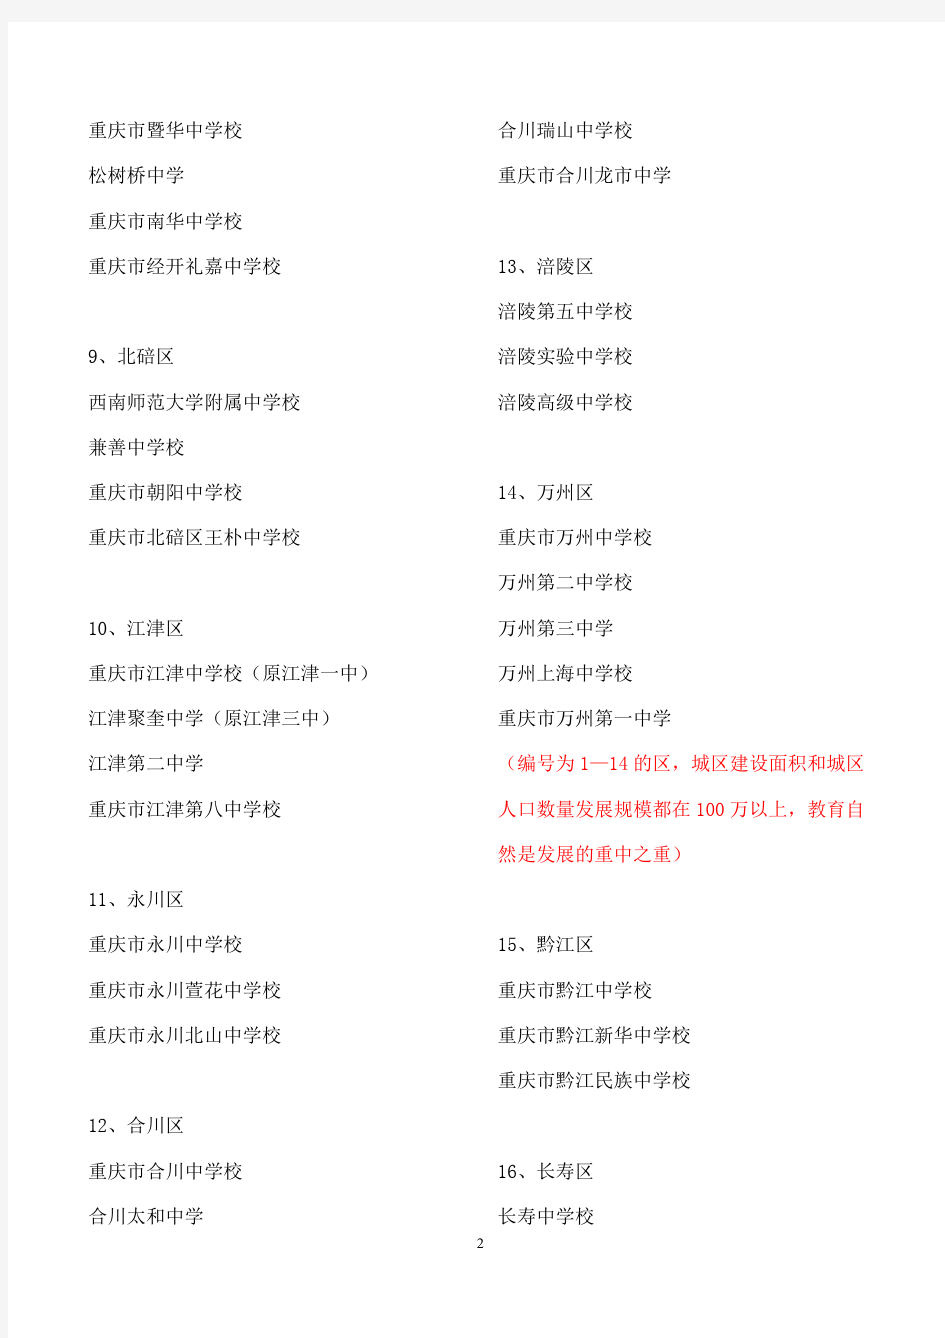 重庆市114所重点中学名单(截止2011年)